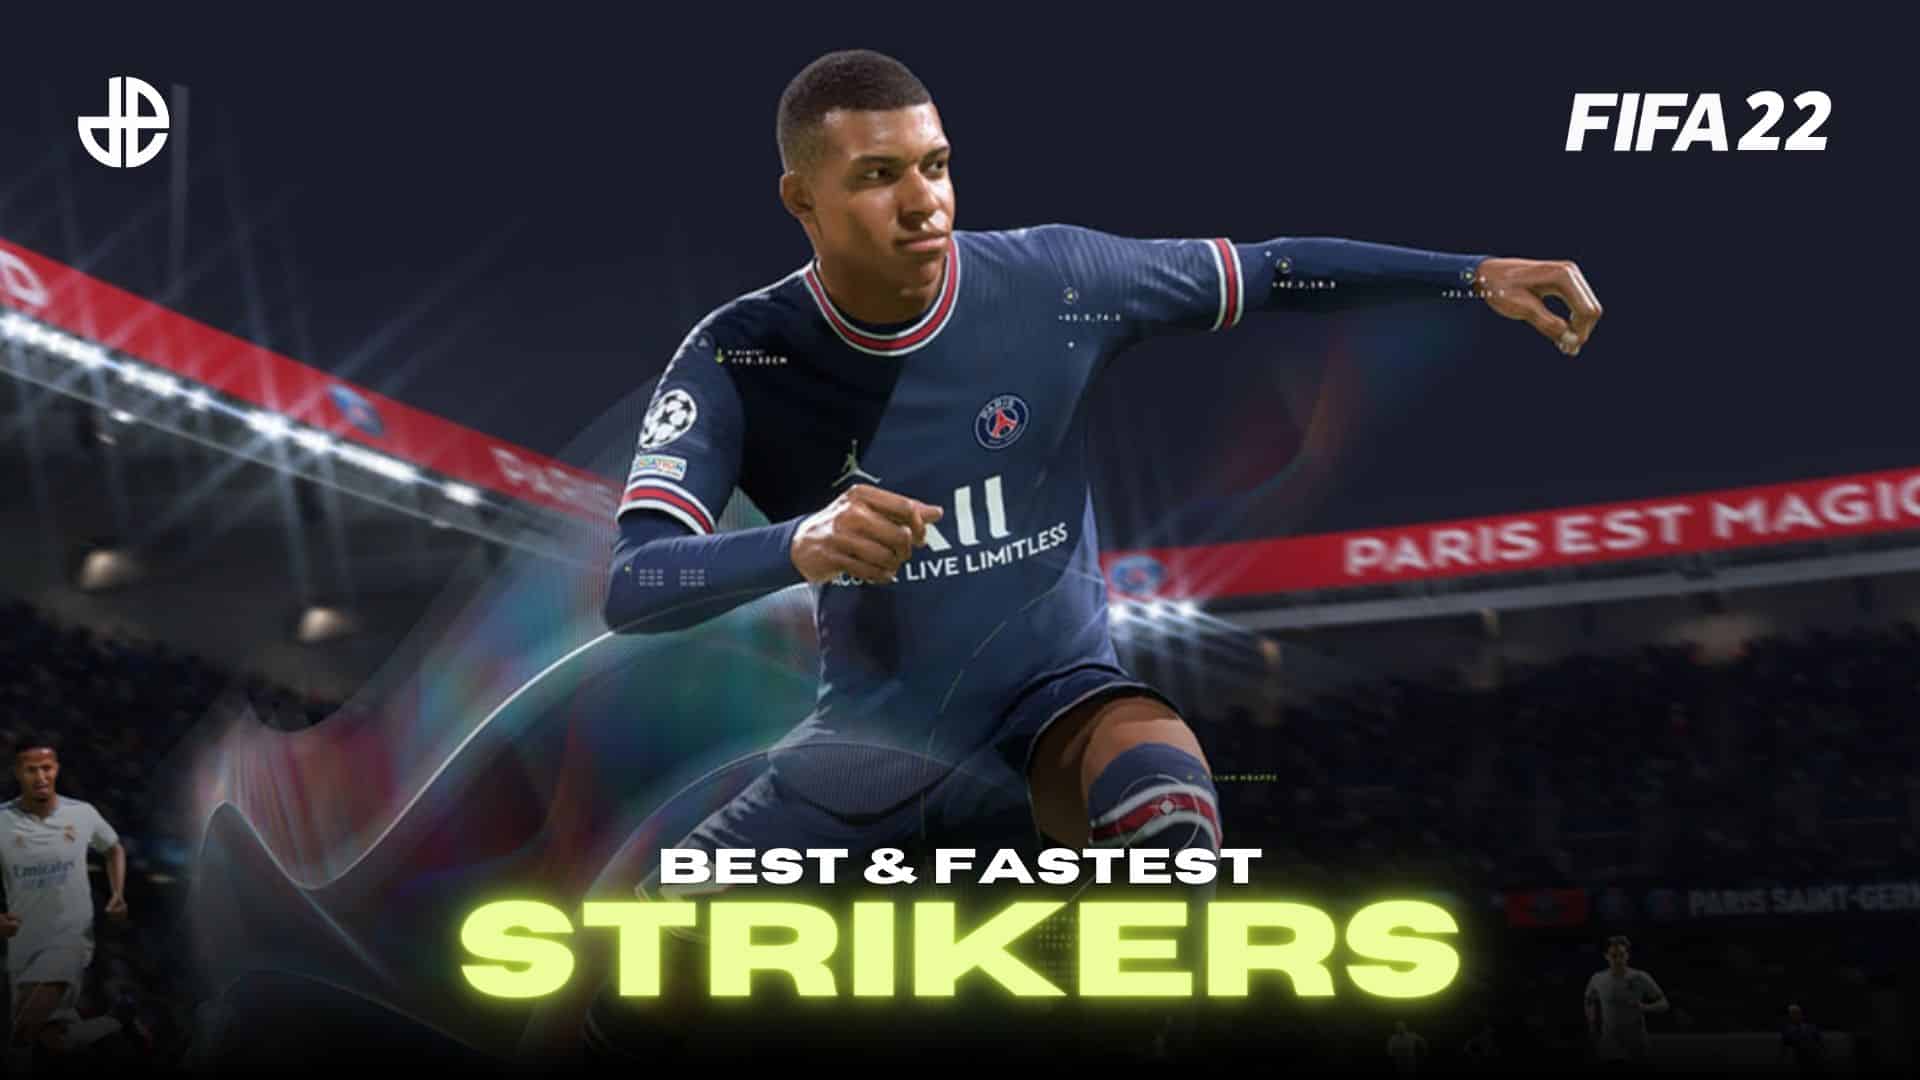 Best Striker in Football